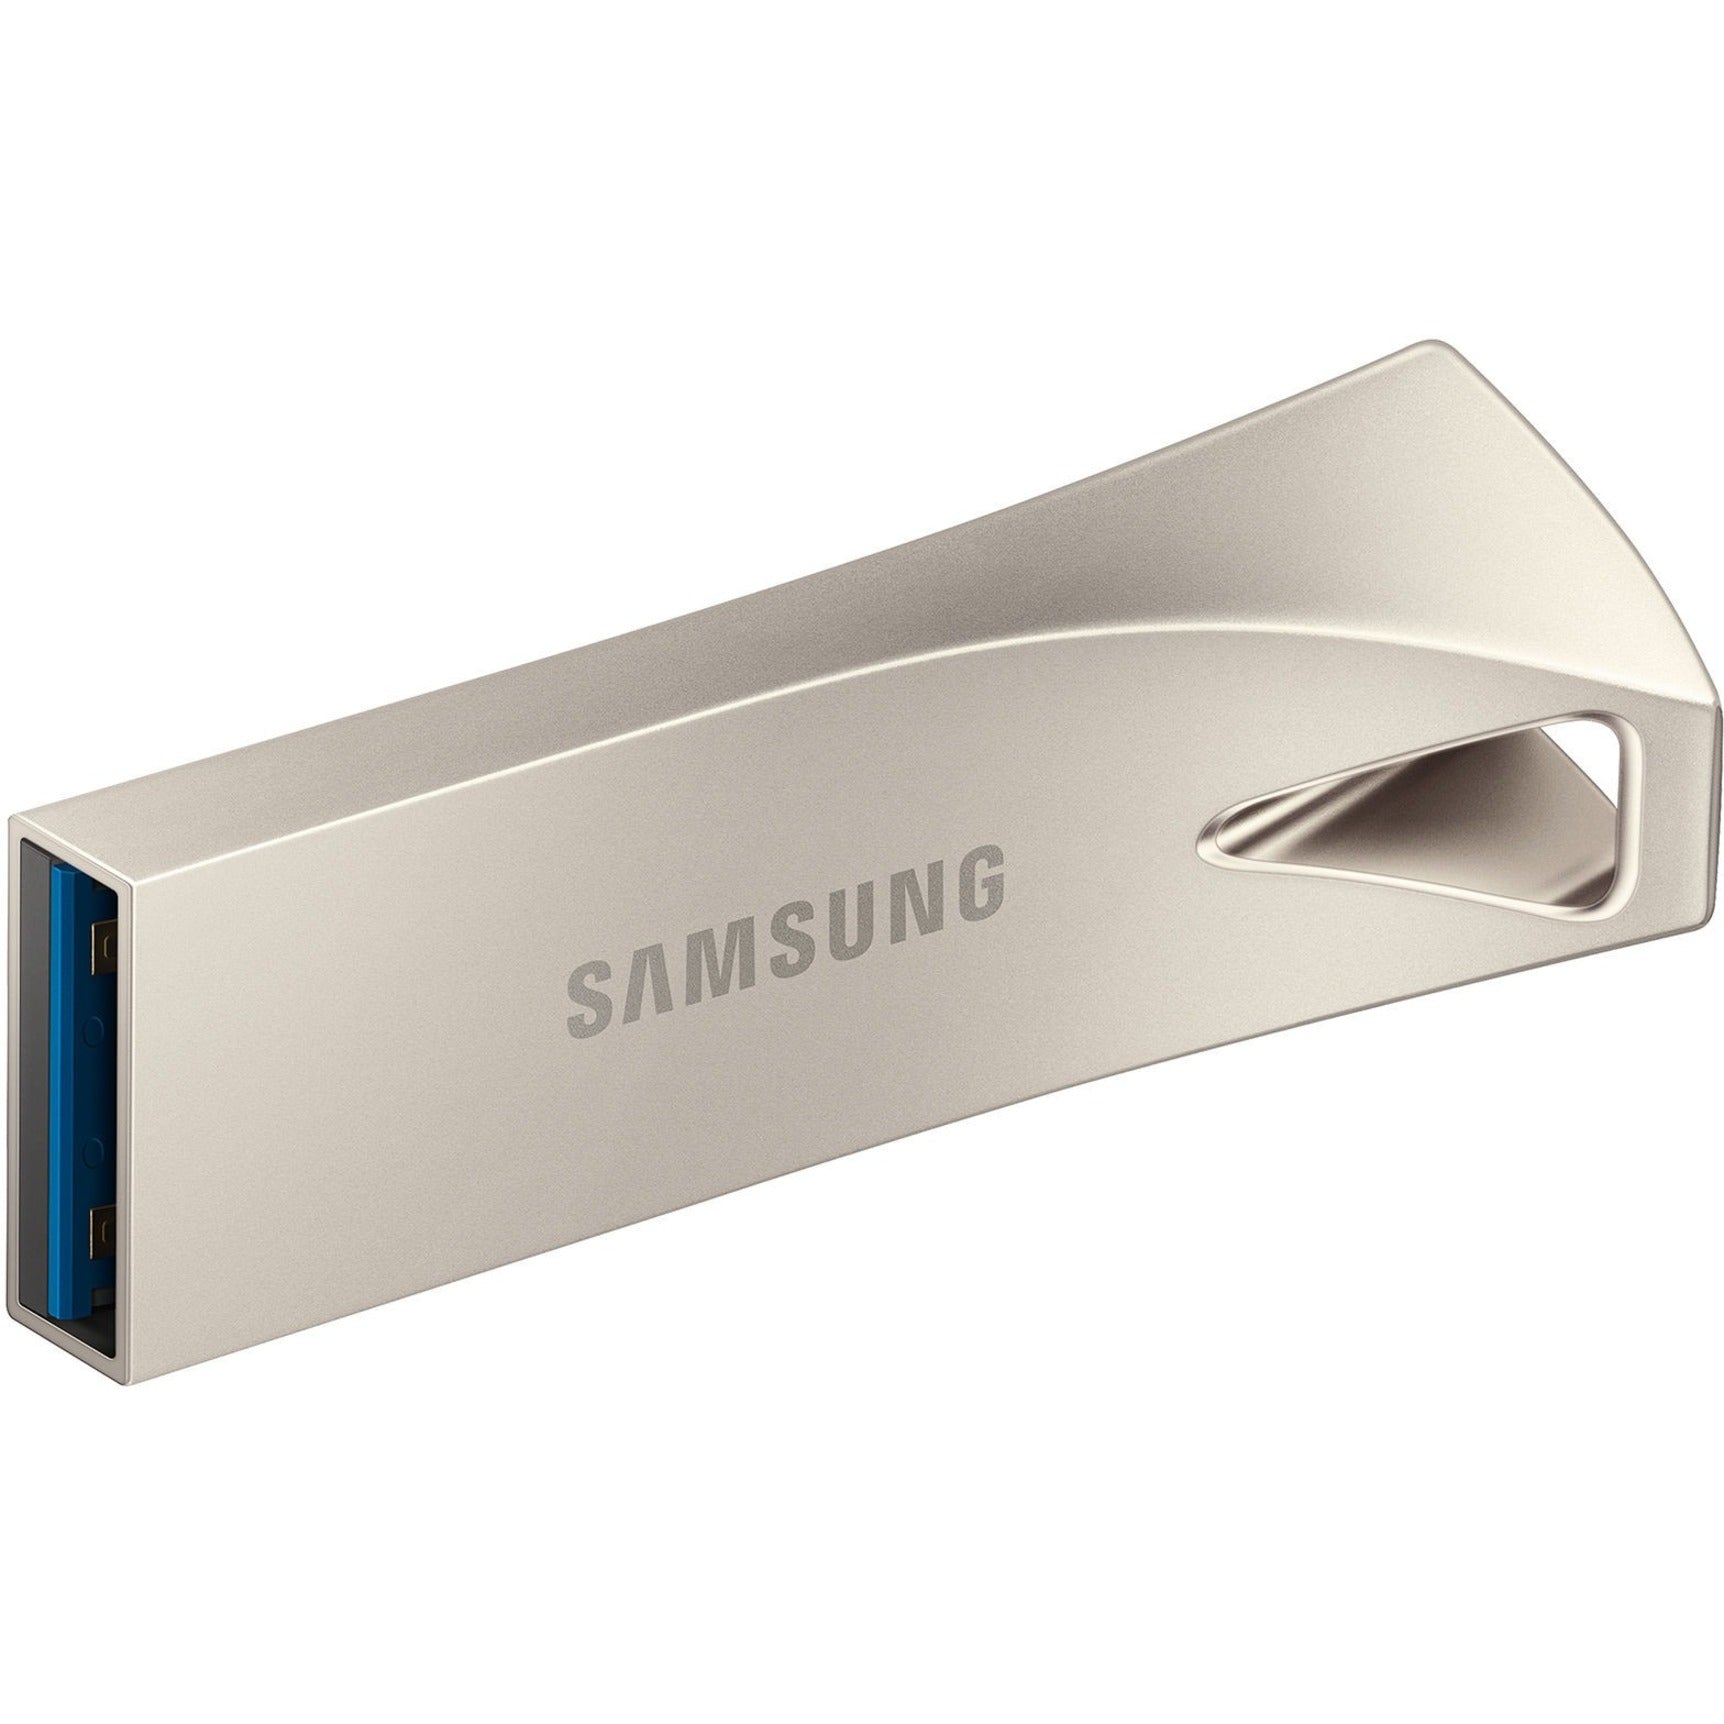 Samsung MUF-256BE3/AM USB 3.1 Flash Drive BAR Plus 256GB Champagne Silver, 5 Year Warranty